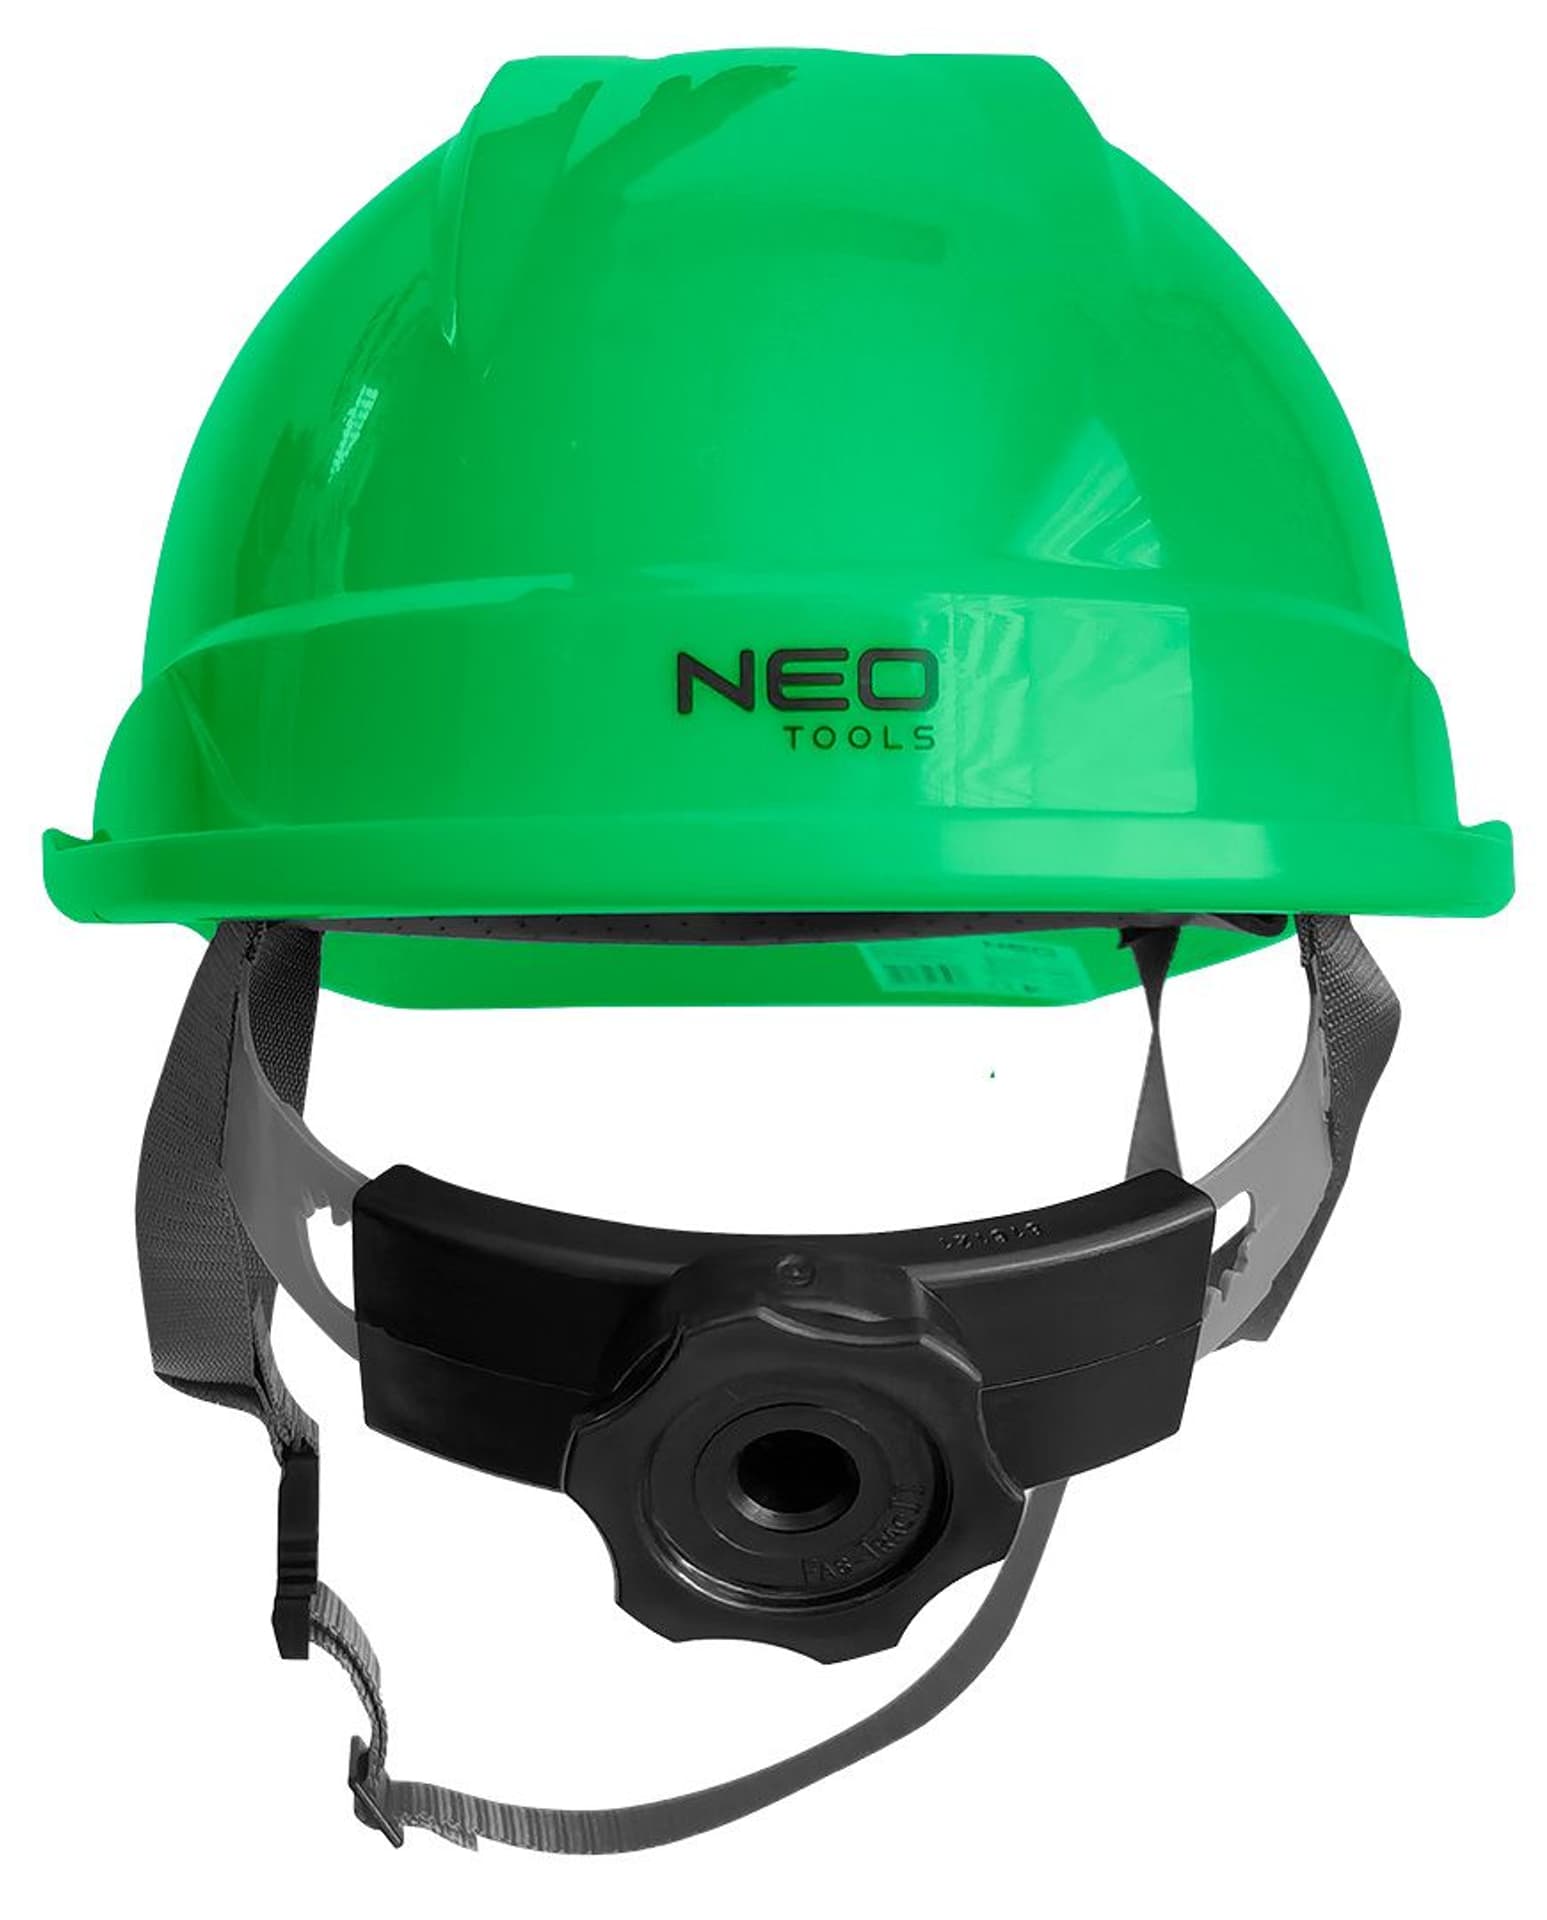 Hełm kask przemysłowy ochronny z paskiem podbródkowym lekki zielony NEO 97-223